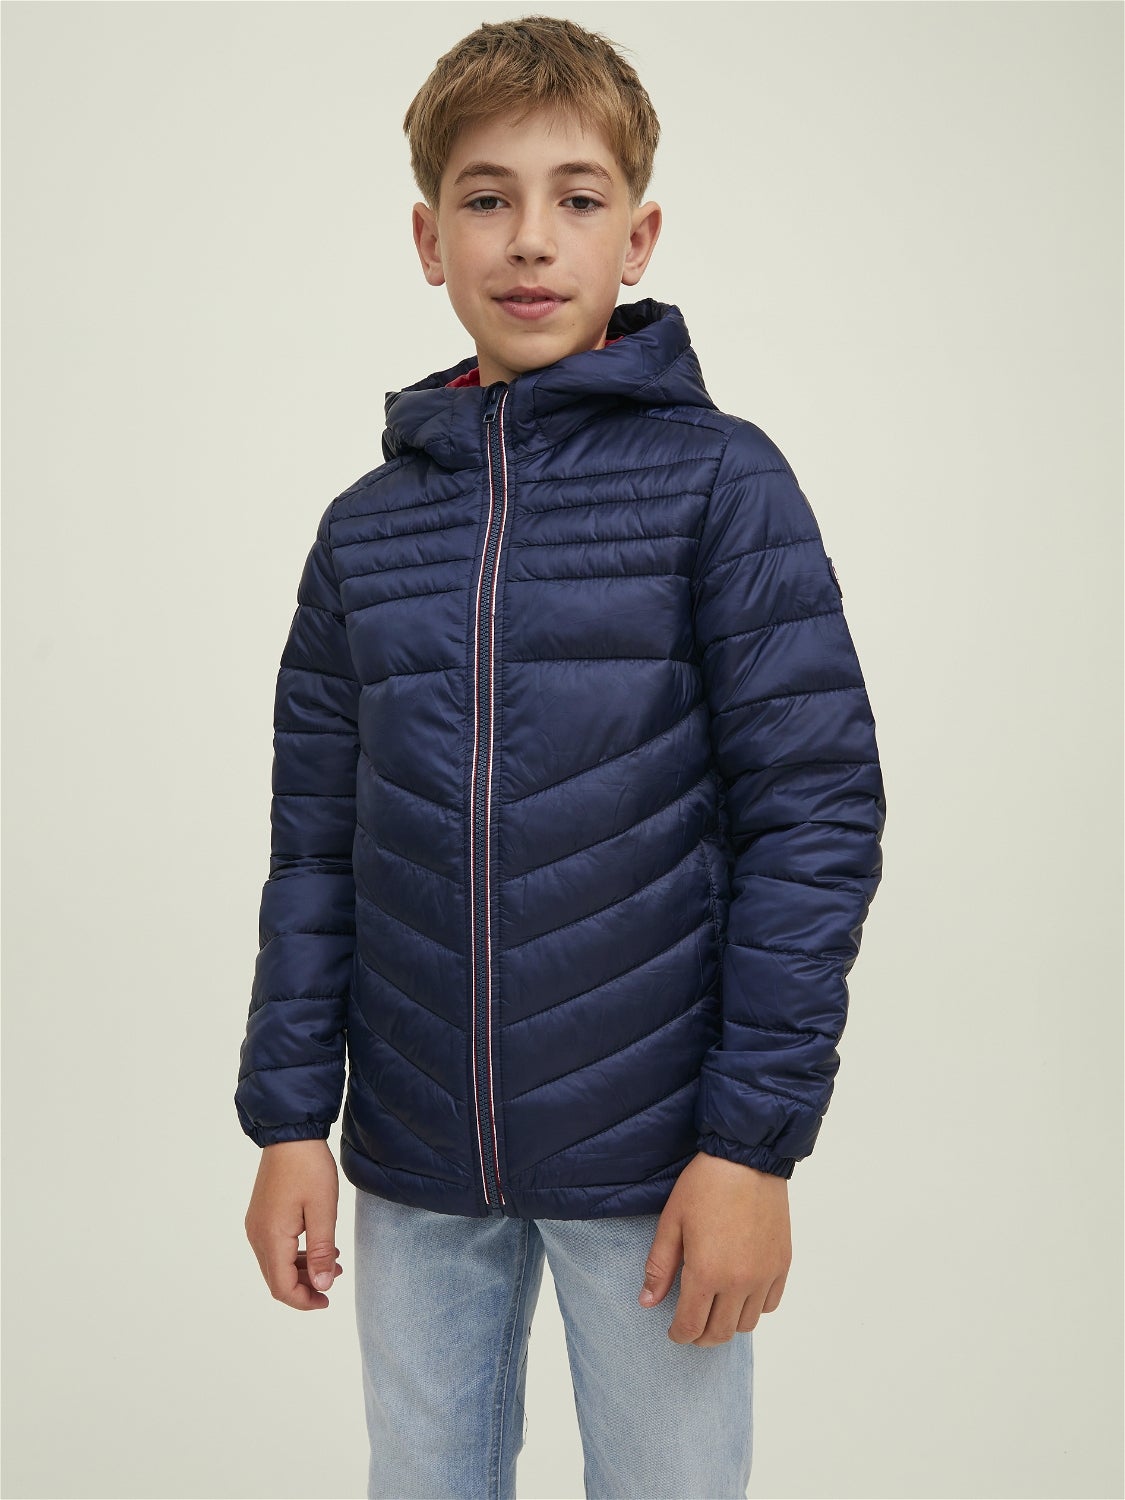 KIDS FASHION Coats Casual Jack & Jones Puffer jacket discount 63% Green/Black 152                  EU 